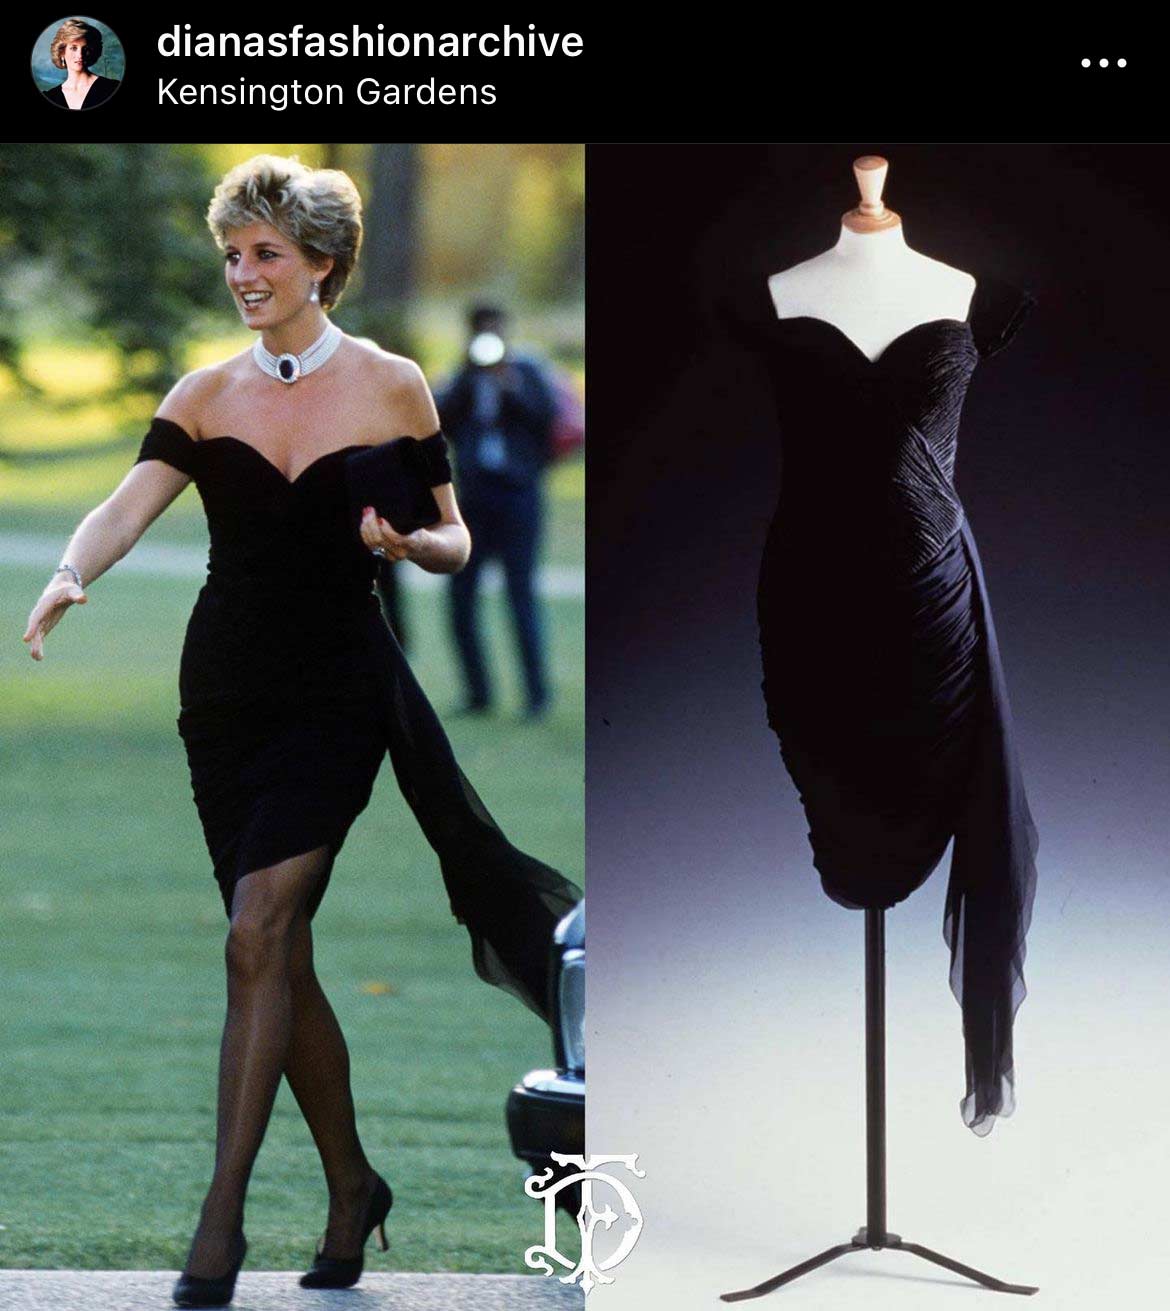 Princess Diana's infamous black dress